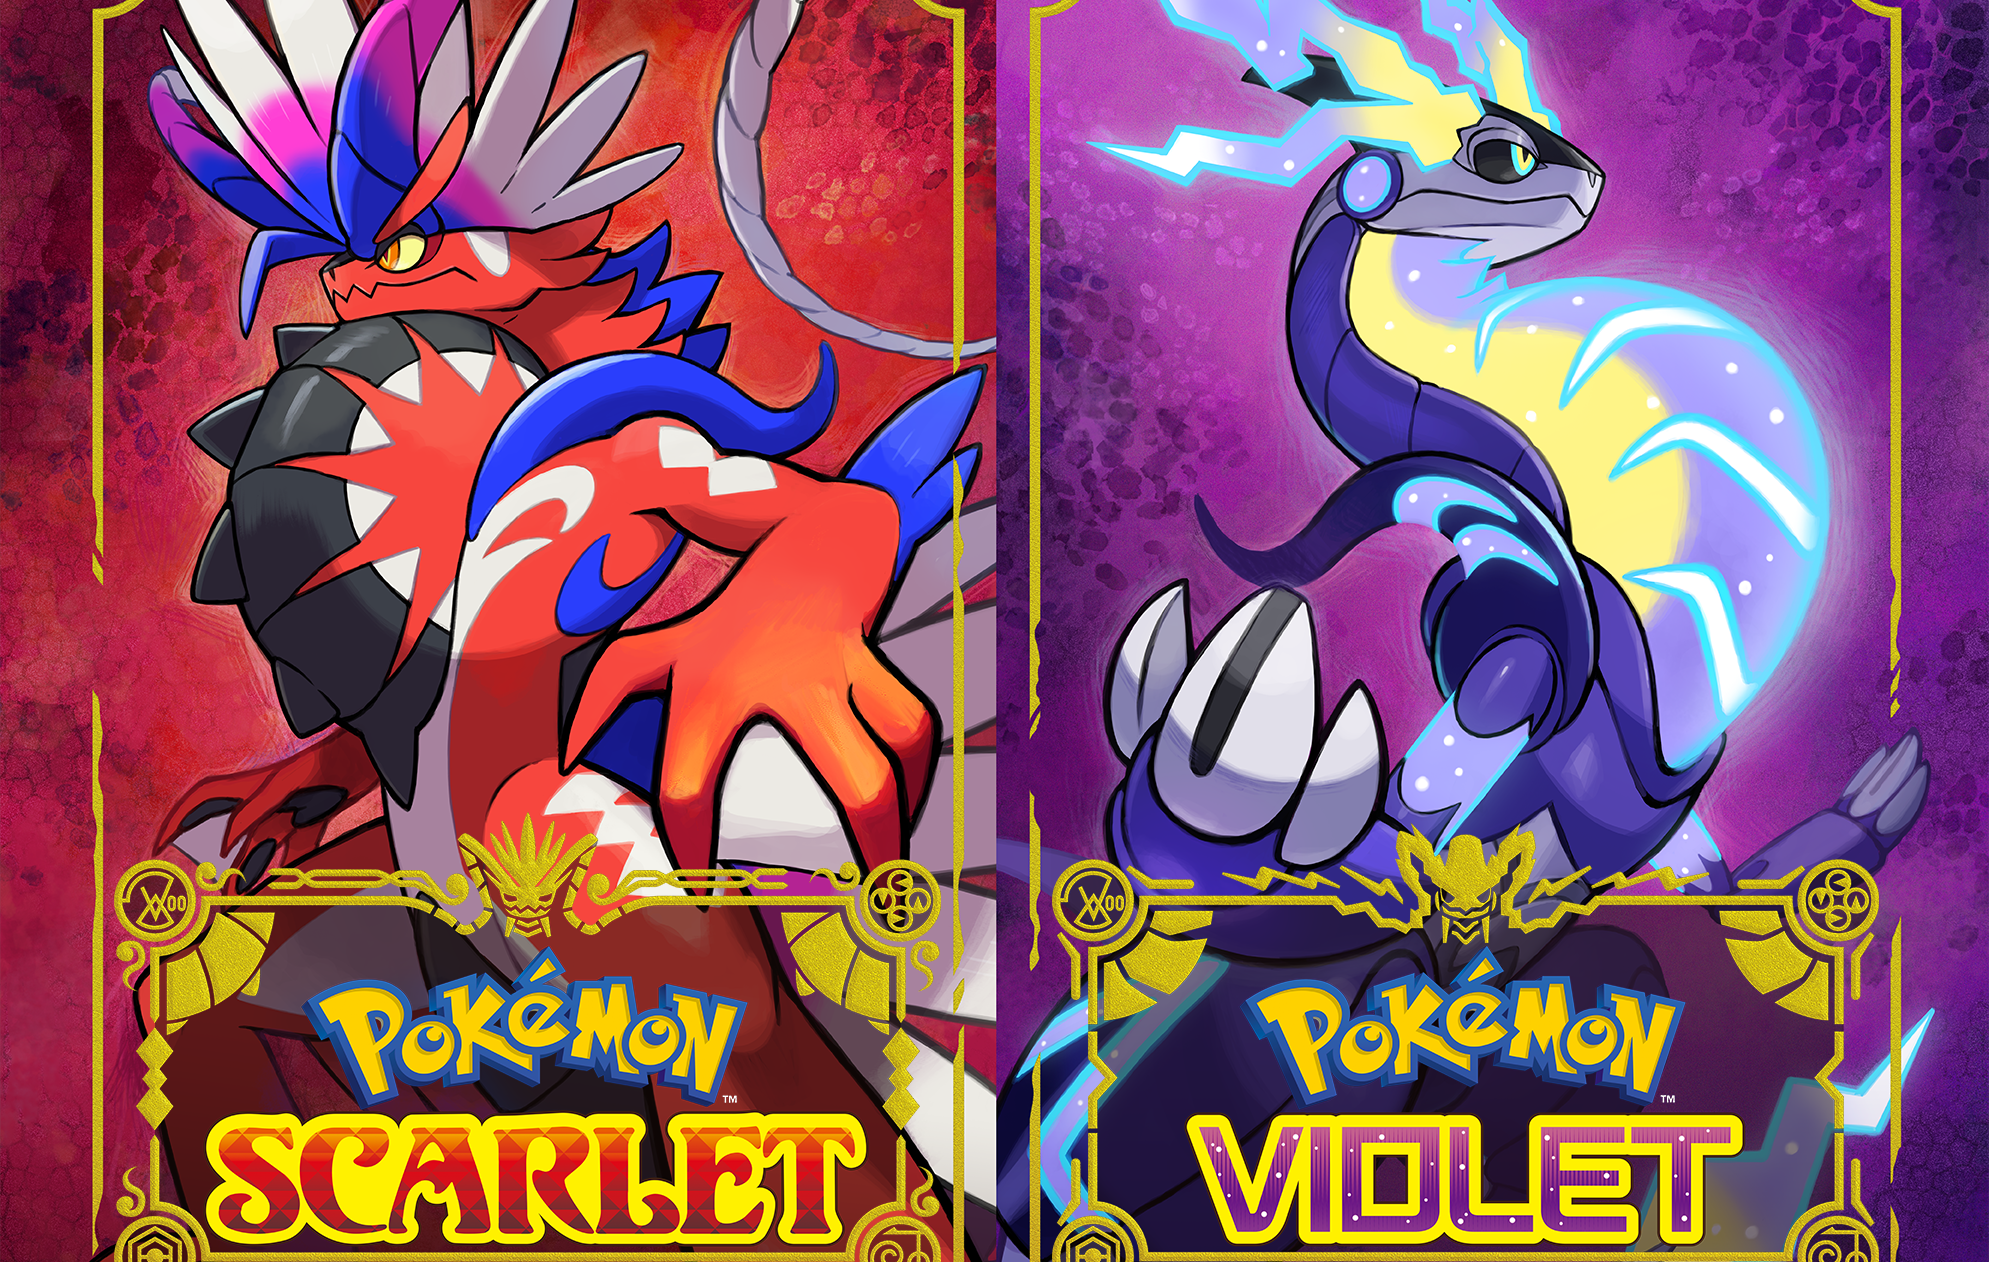 The Story — Pokémon Scarlet and Pokémon Violet